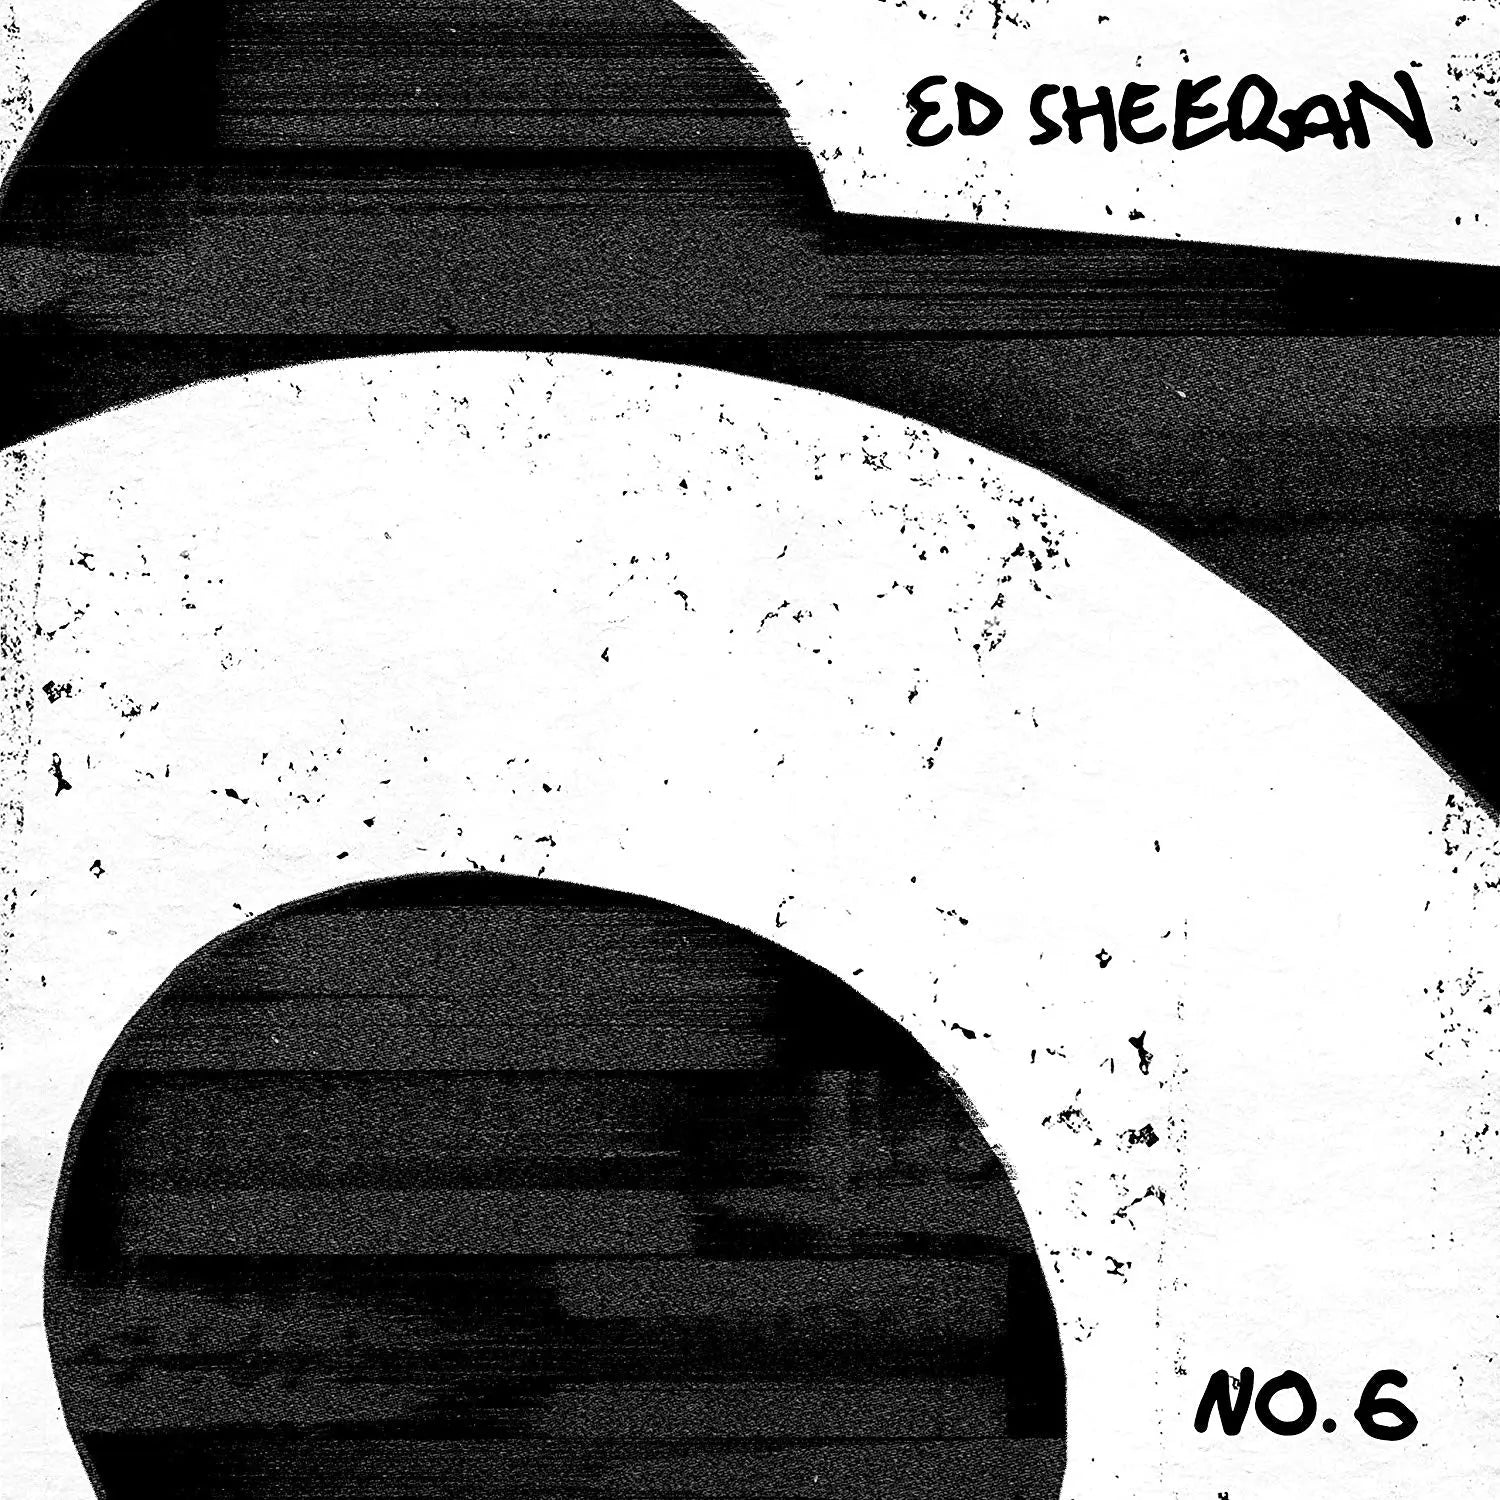 Ed Sheeran - No. 6 Collaborations Project (180 Gram Black Vinyl) [Vinyl]